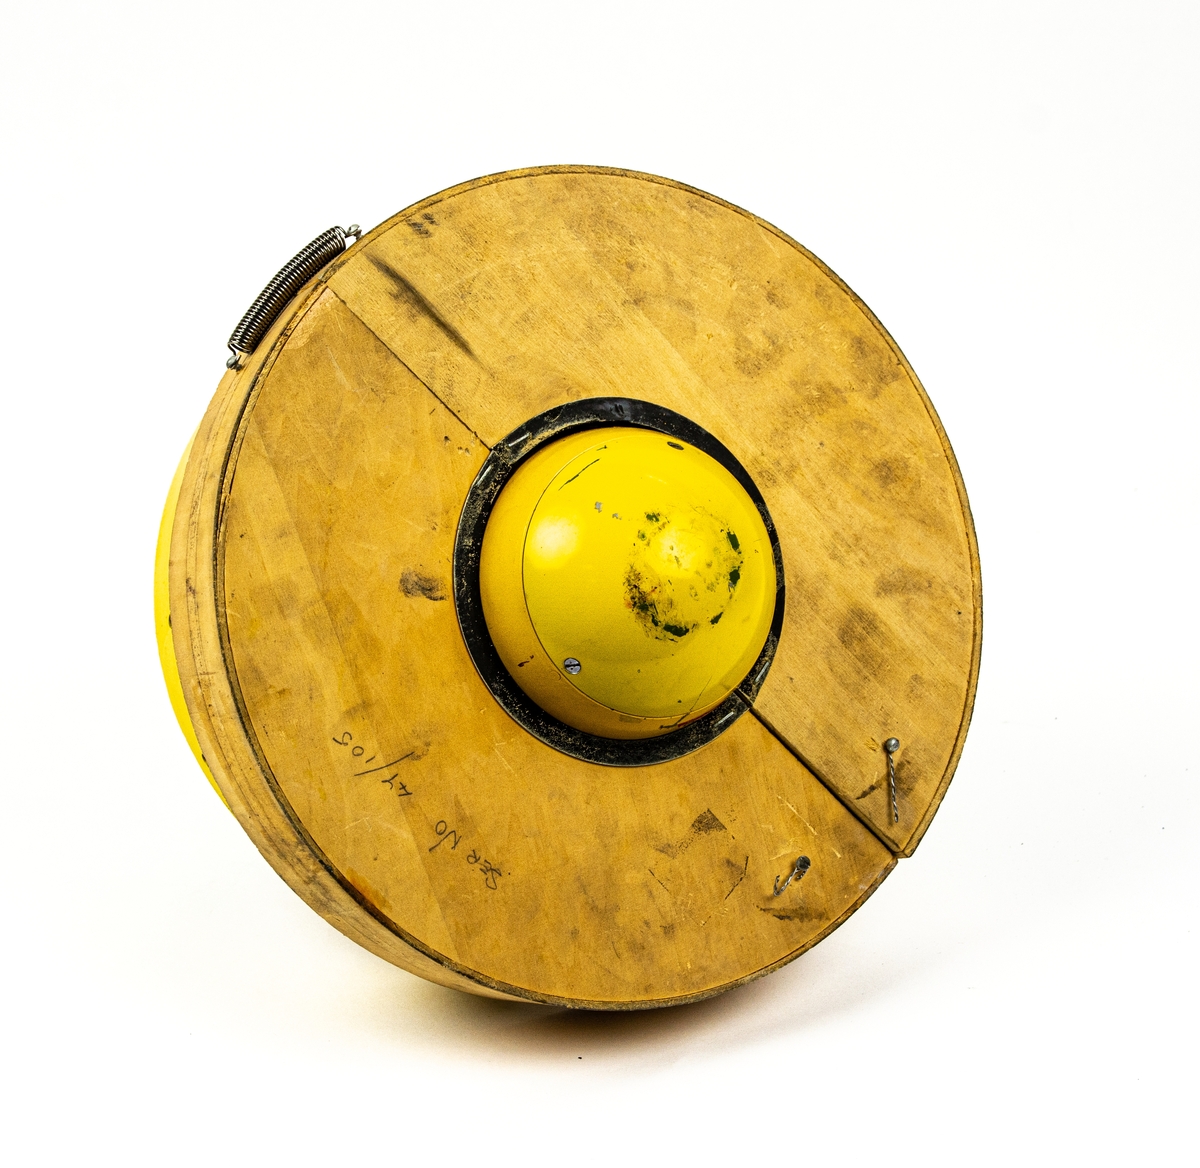 Hydraliskpump tillverkad av Vickers, gul målad.